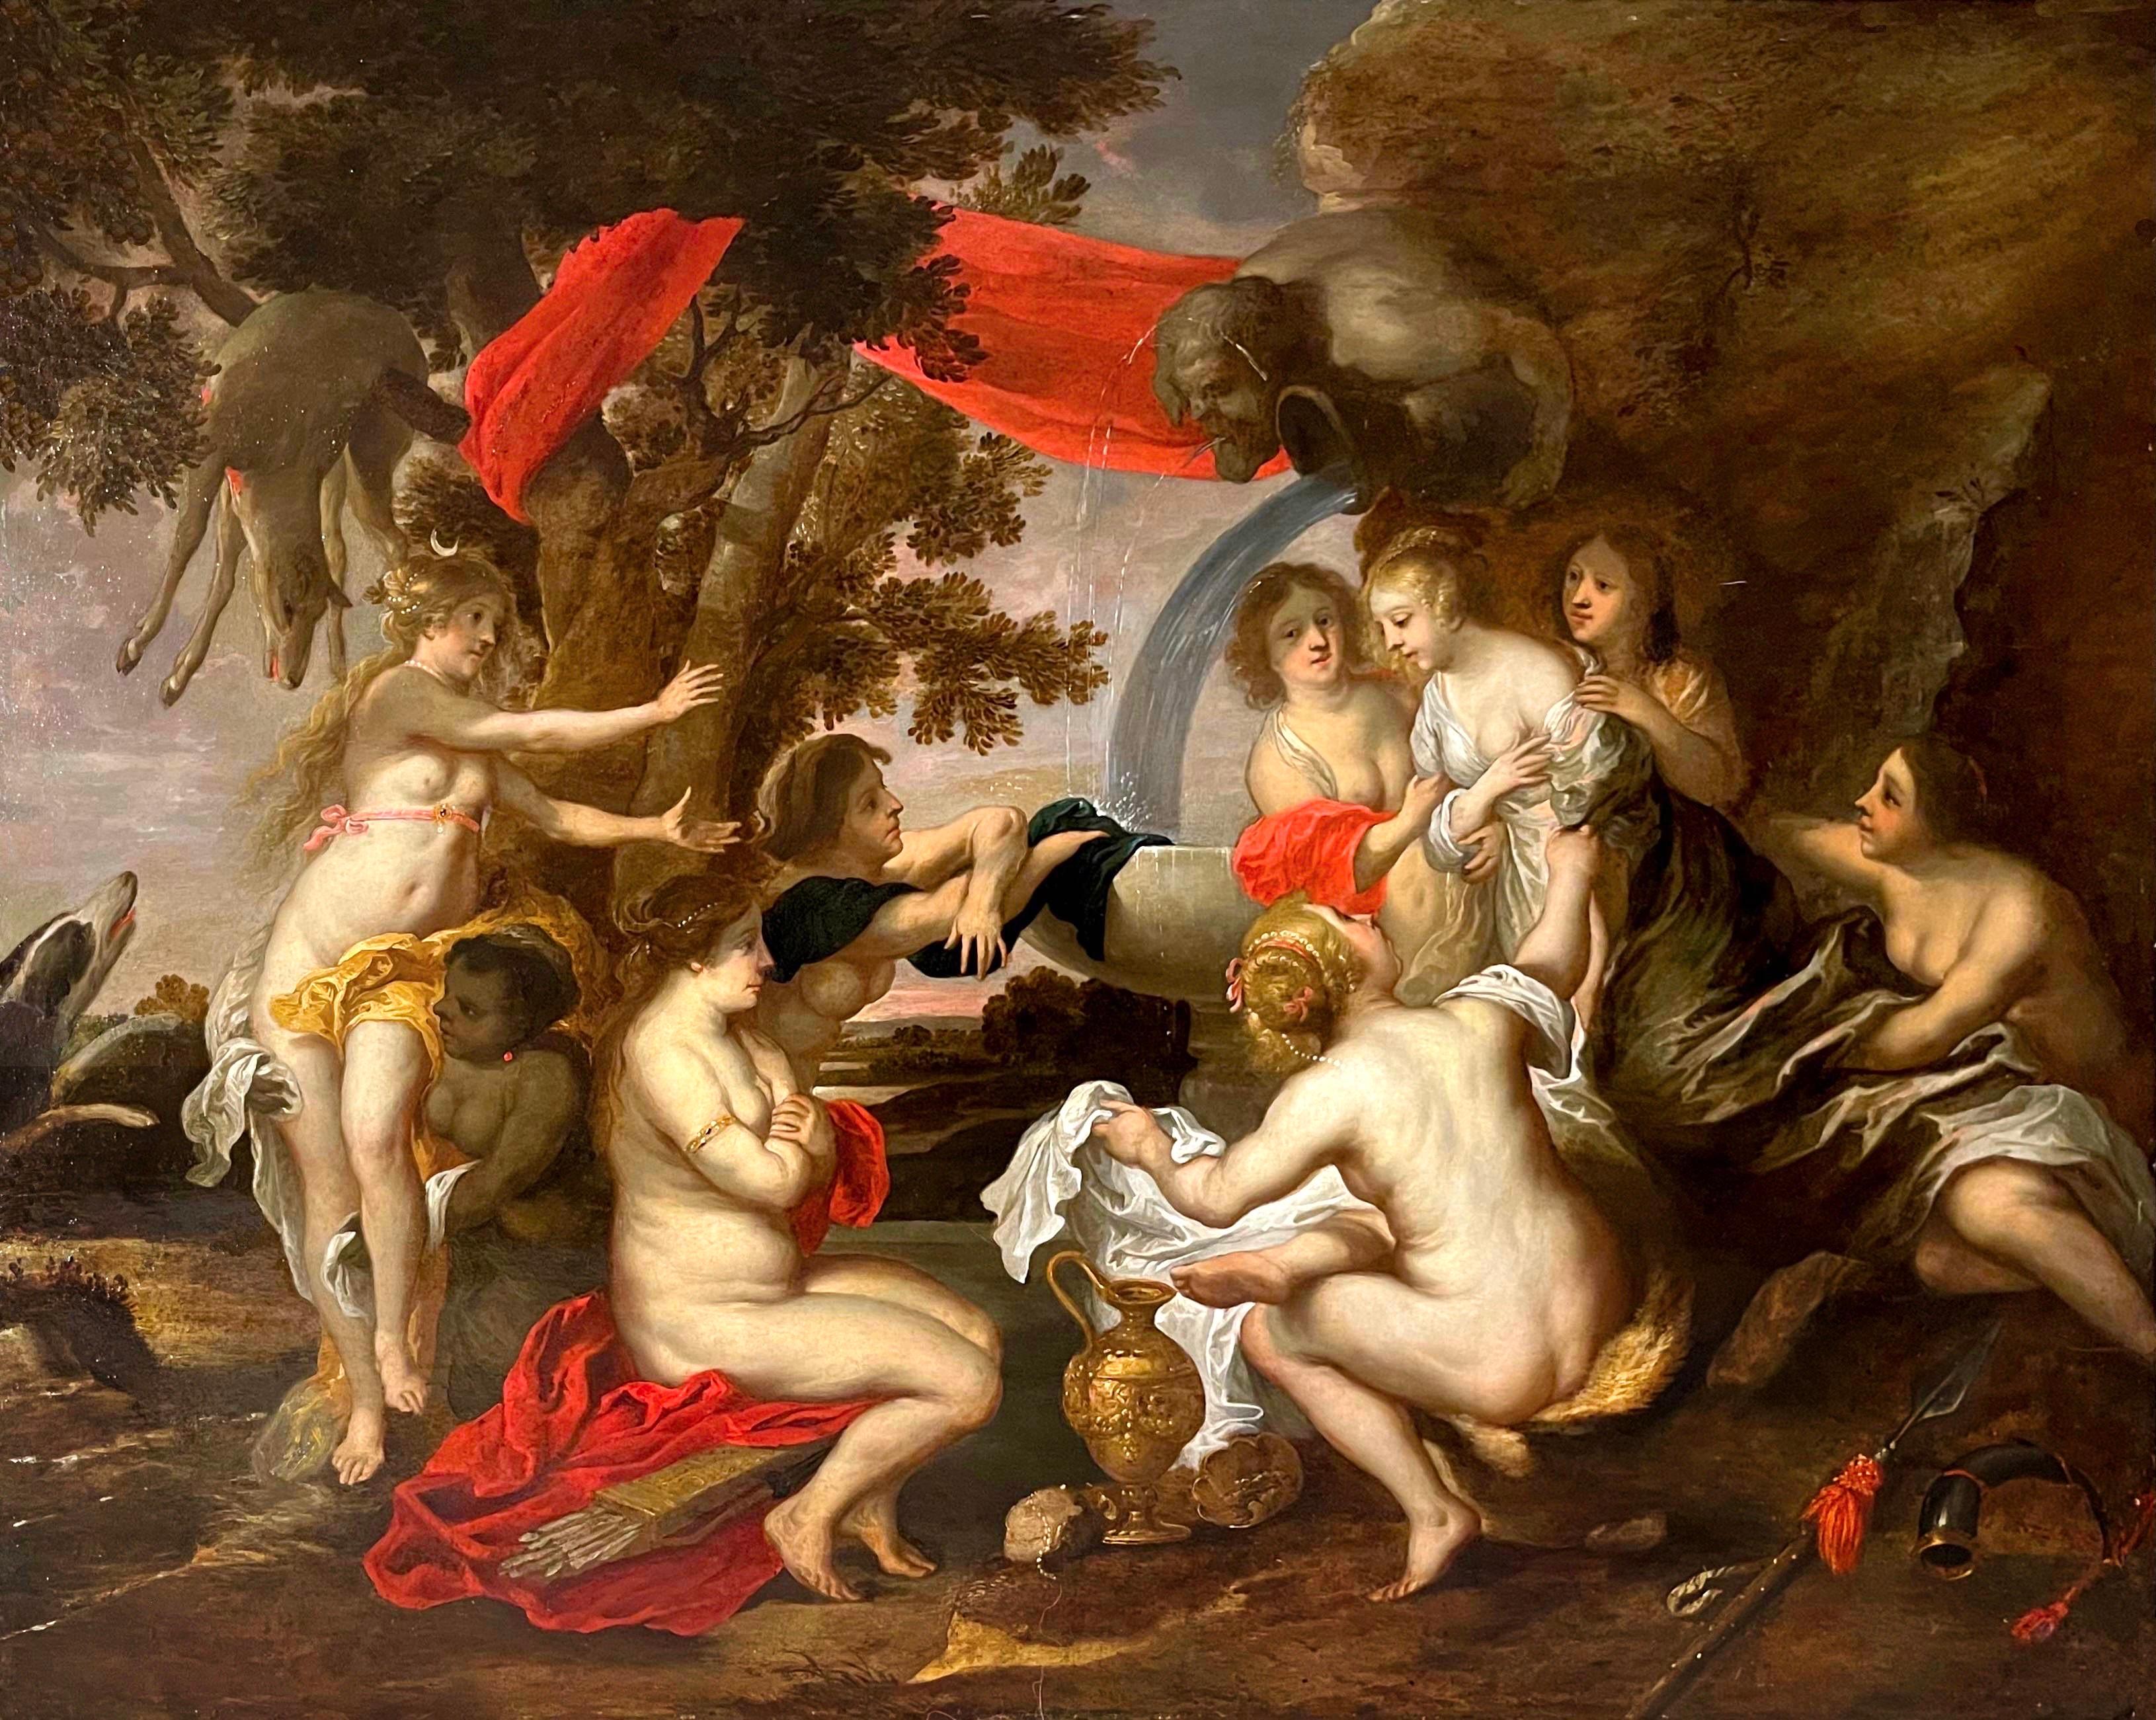 Grand tableau de maître ancien flamand du XVIIe siècle - Diane et Callisto - Rubens